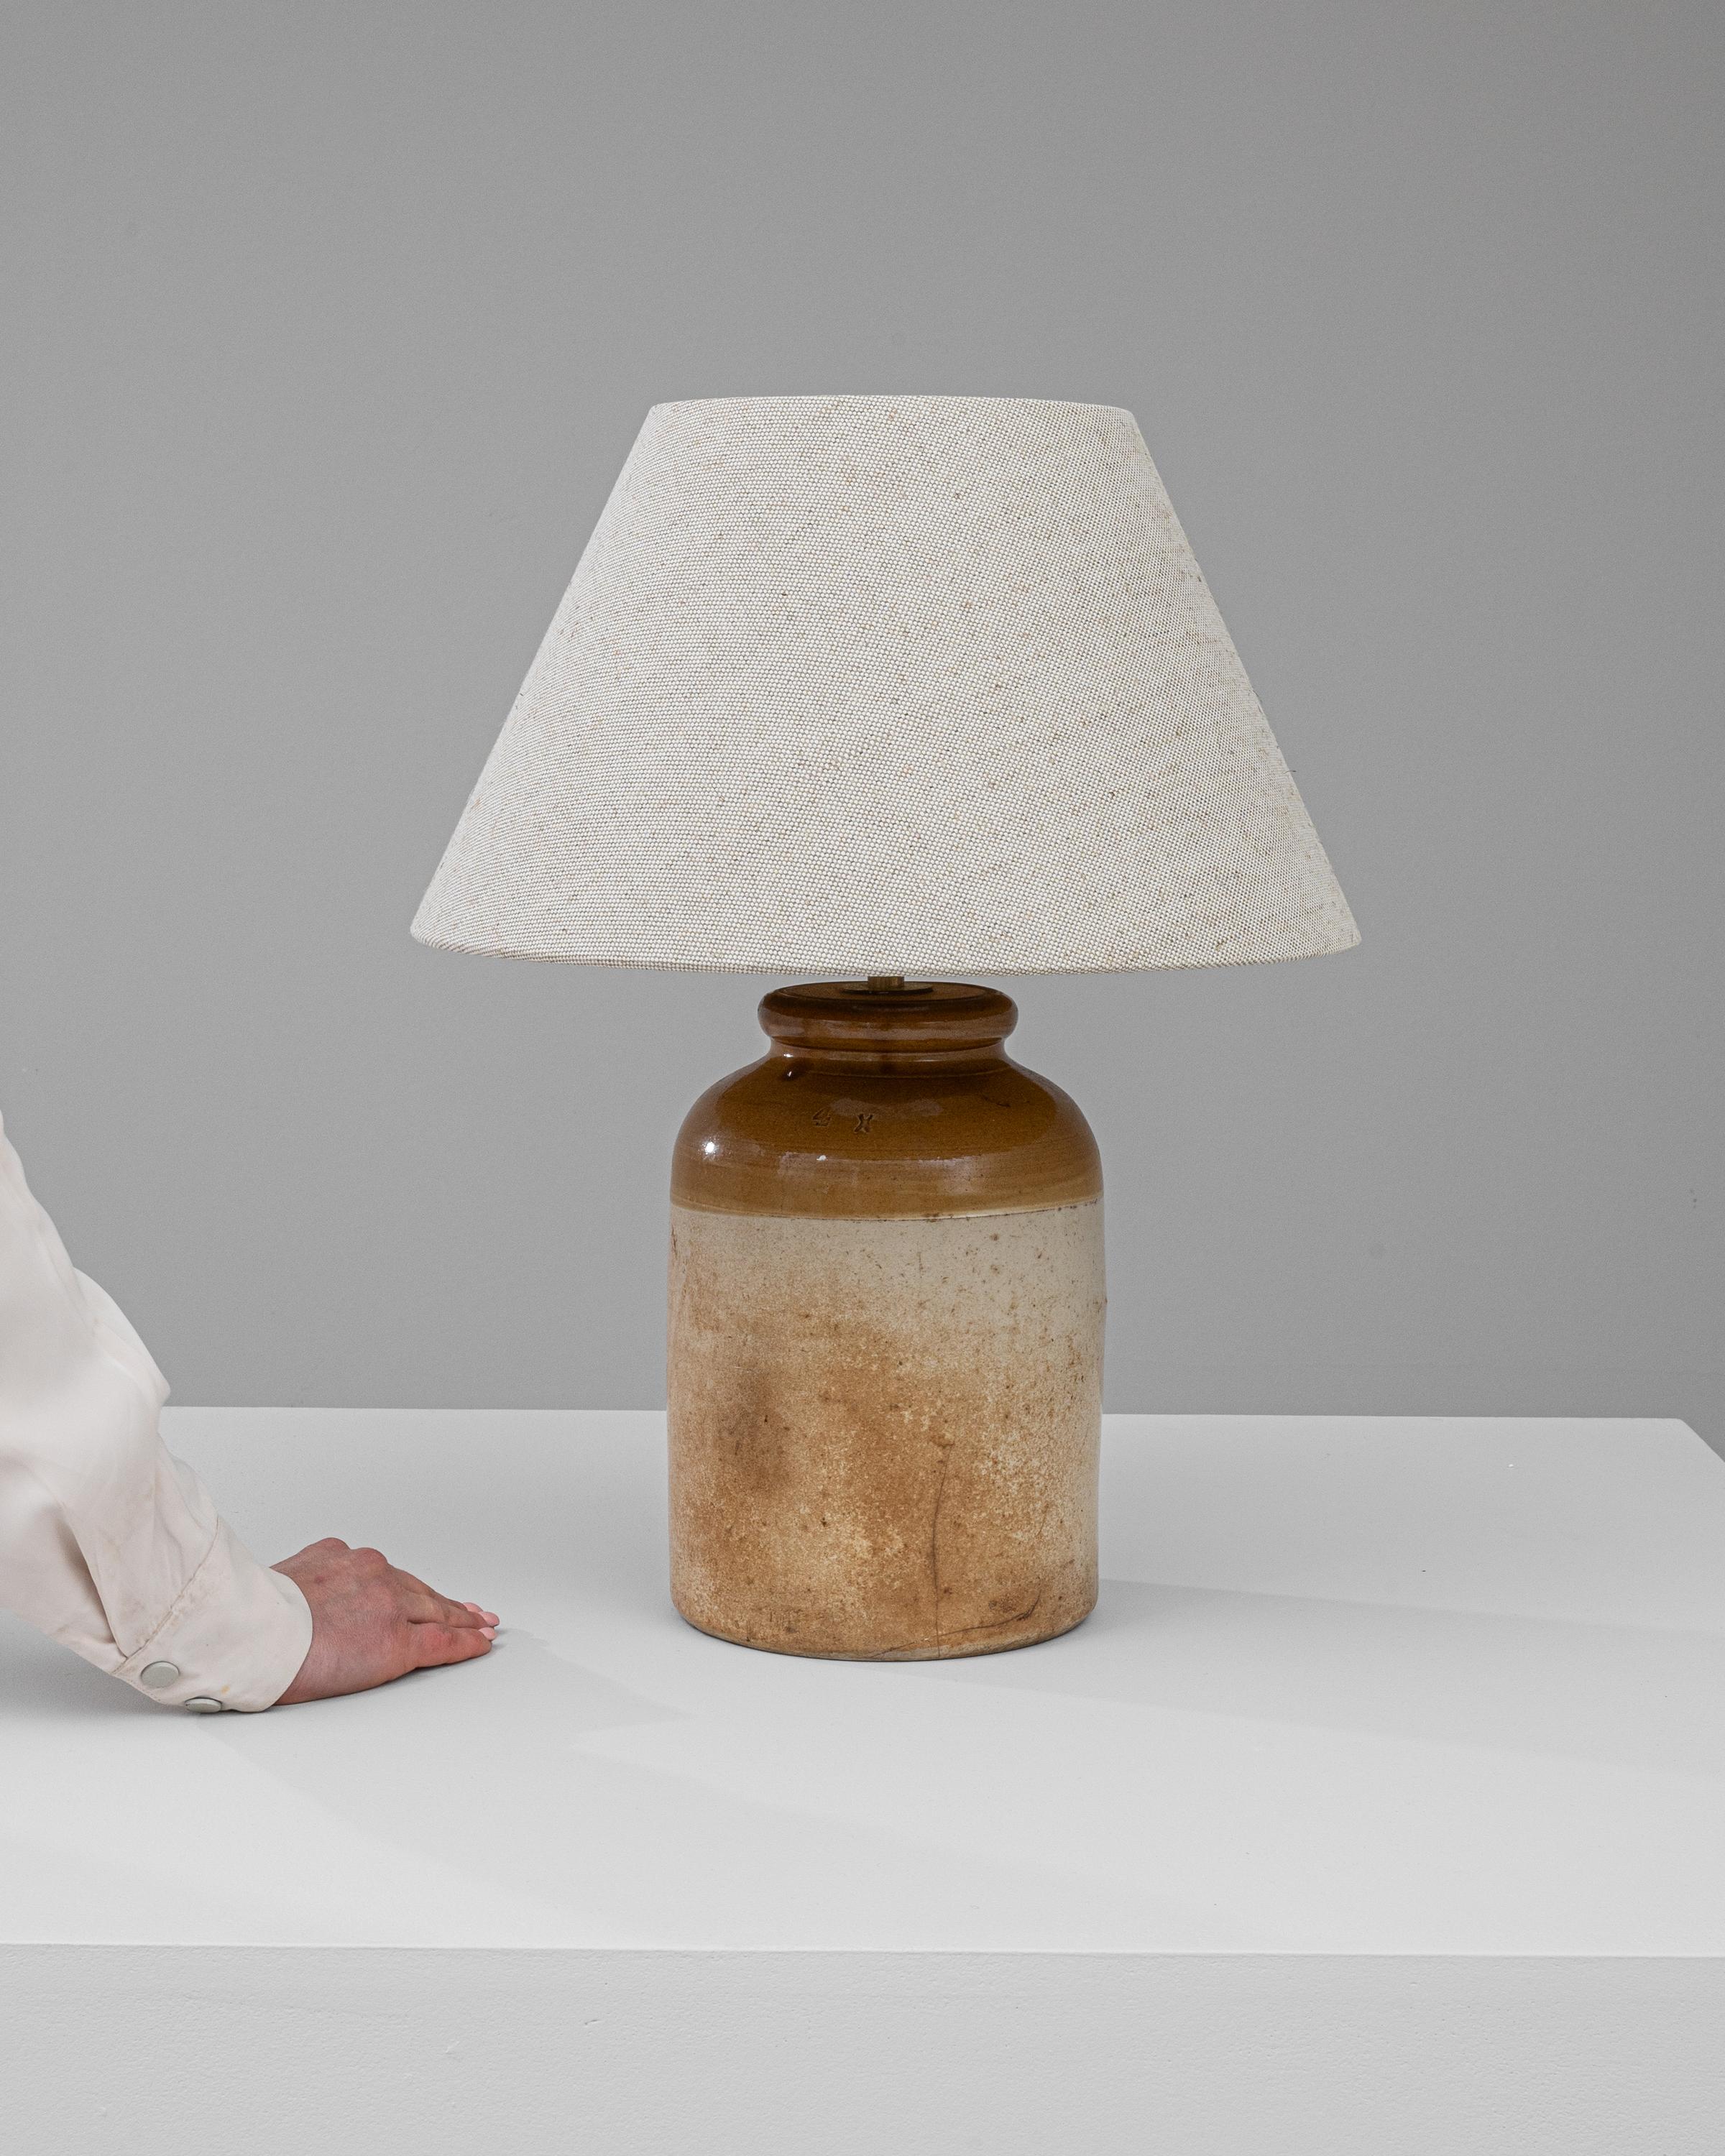 Découvrez le charme du passé avec cette lampe de table en céramique britannique du début du XXe siècle. Fabriquée avec la finesse des artisans d'antan, cette lampe est dotée d'une base robuste en céramique bicolore qui évoque les riches tons de